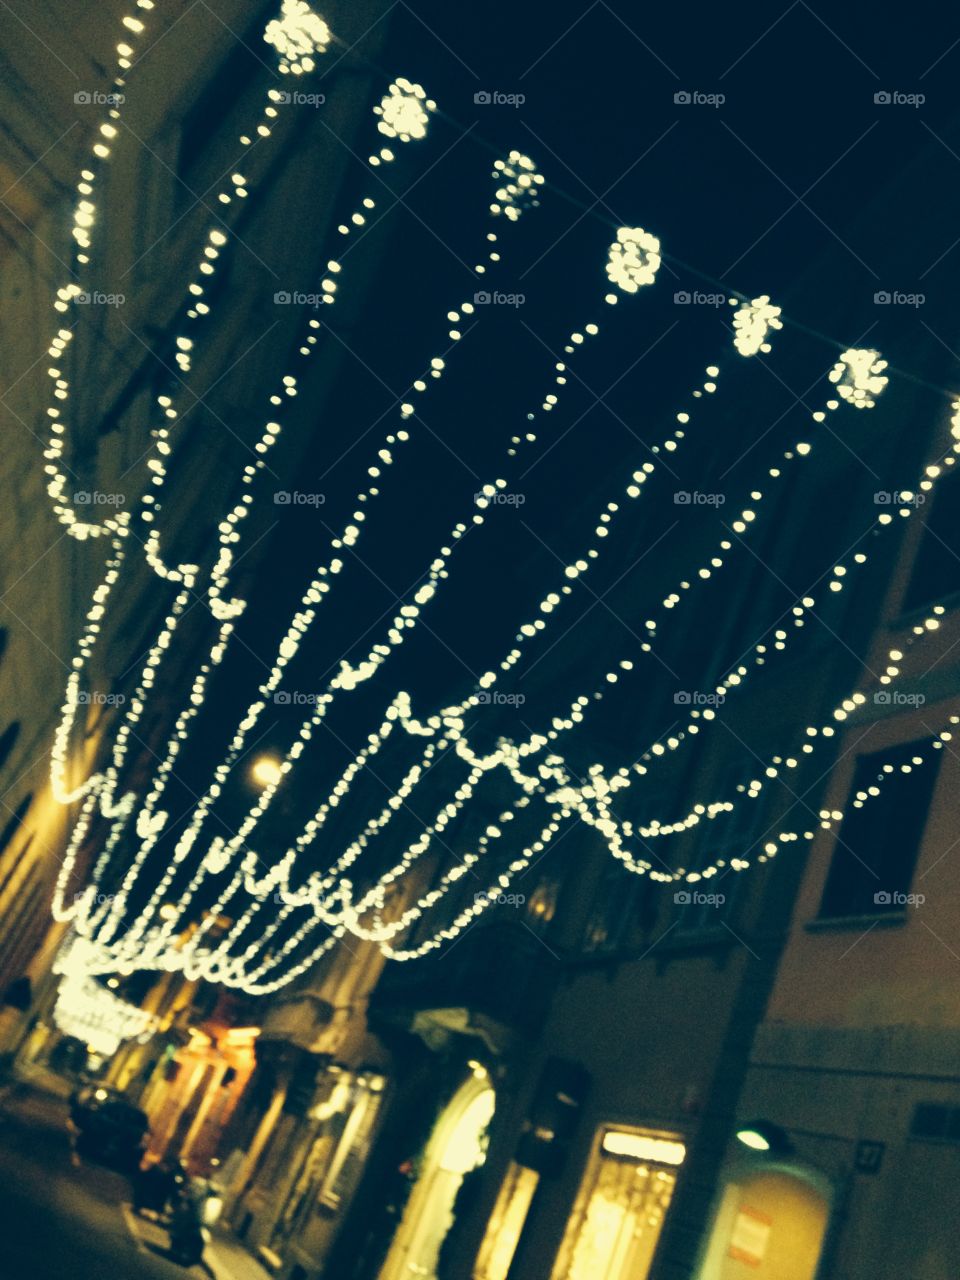 Christmas streets and light